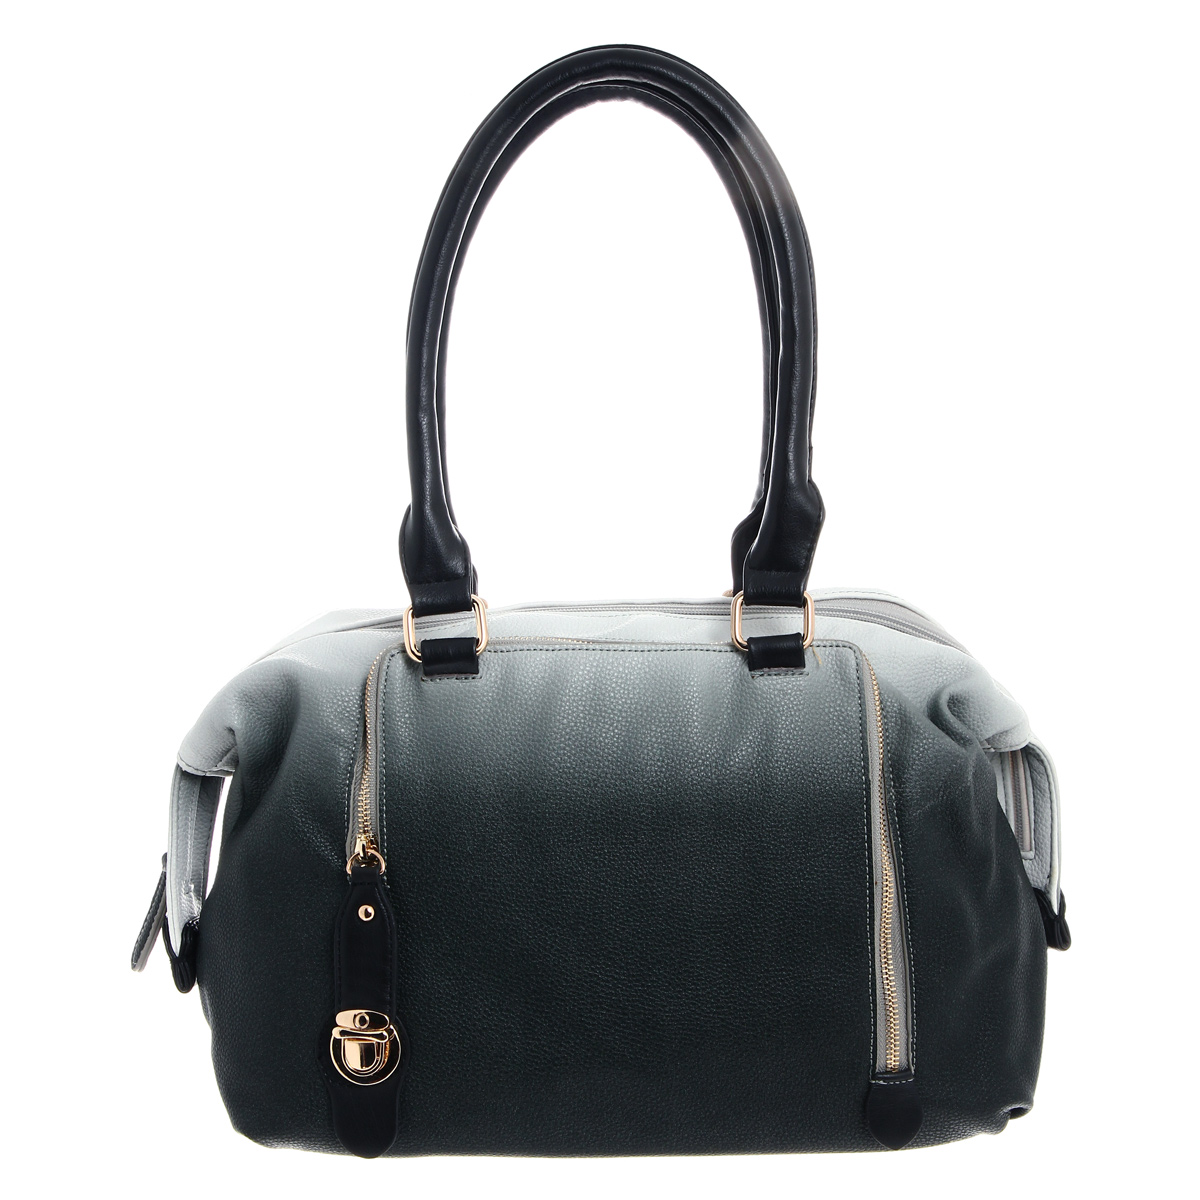 Сумка женская "Orsa Oro", цвет: жемчужный, темно-серый. D-749/16 - купить фирменную сумку по доступной цене с доставкой на дом в интернет магазине OZON.ru